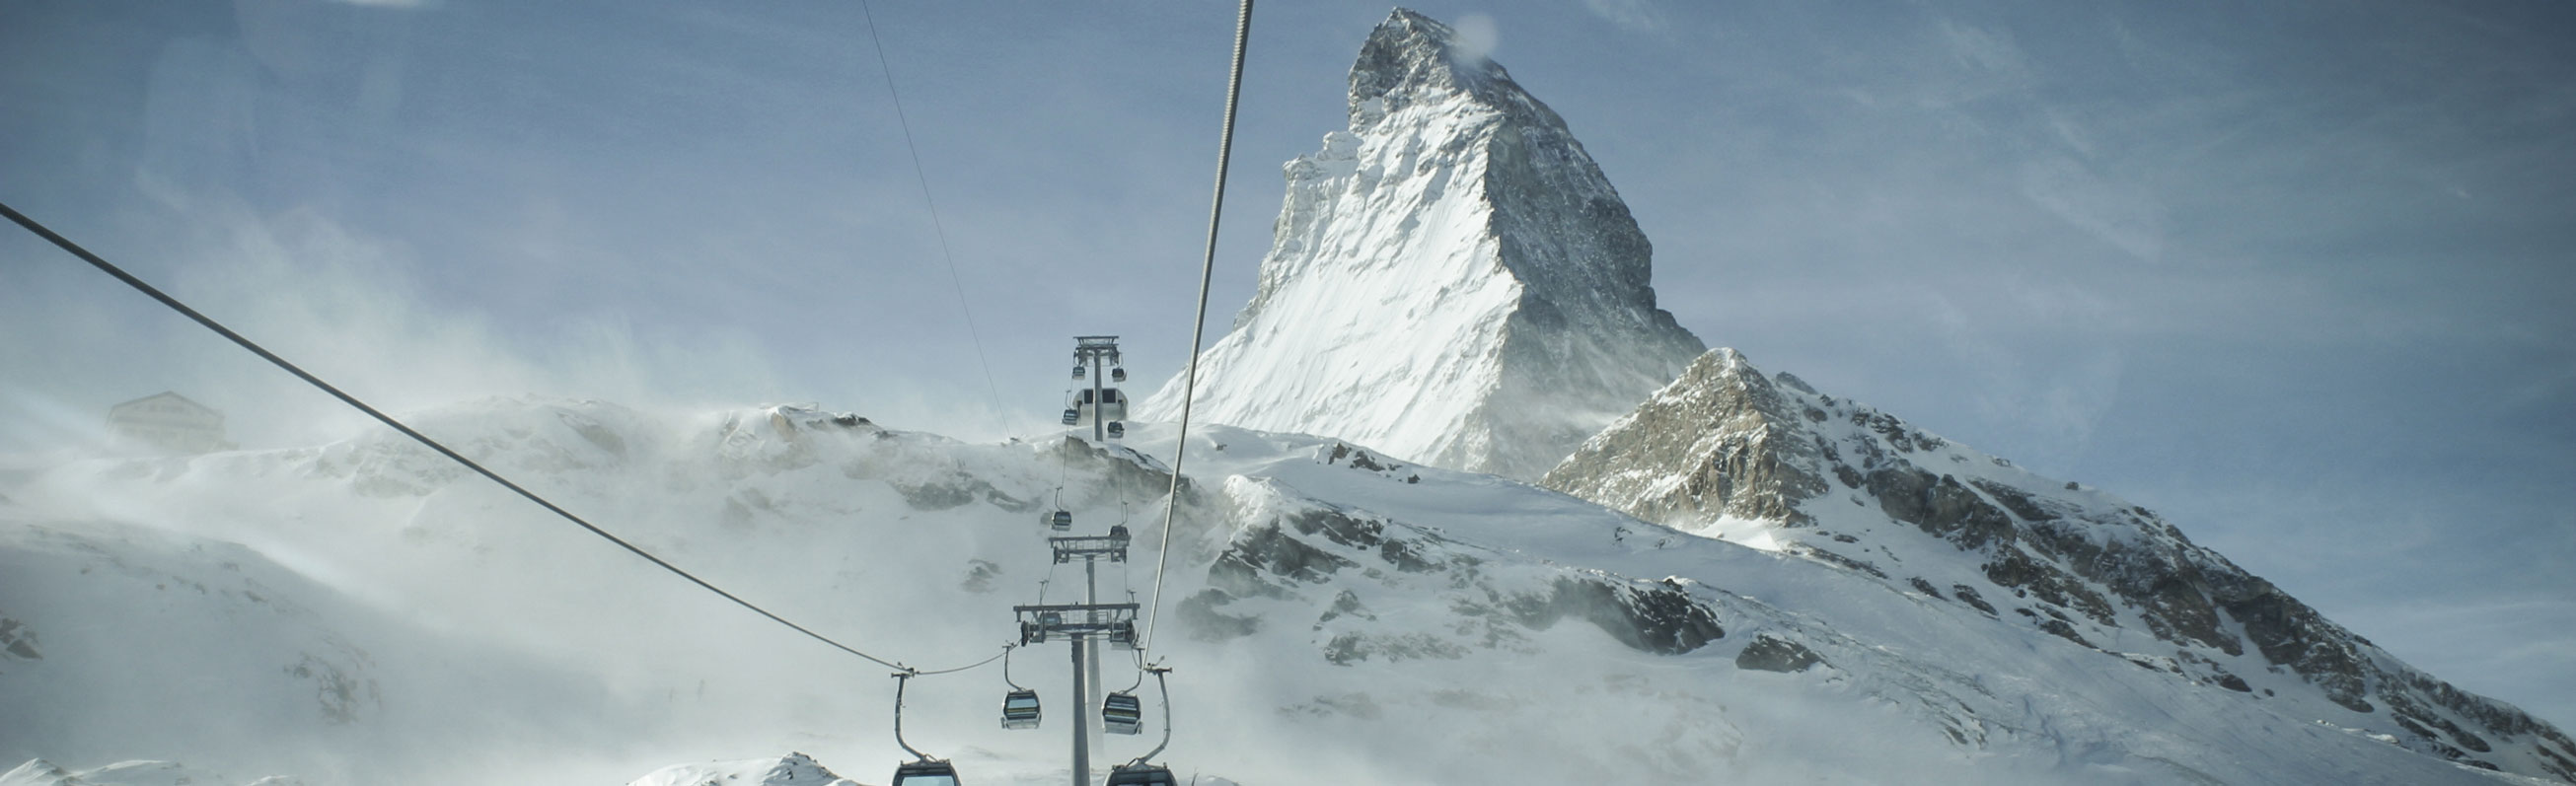 Stiune de schiZermatt - Matterhorn, ghetar 5.jpg